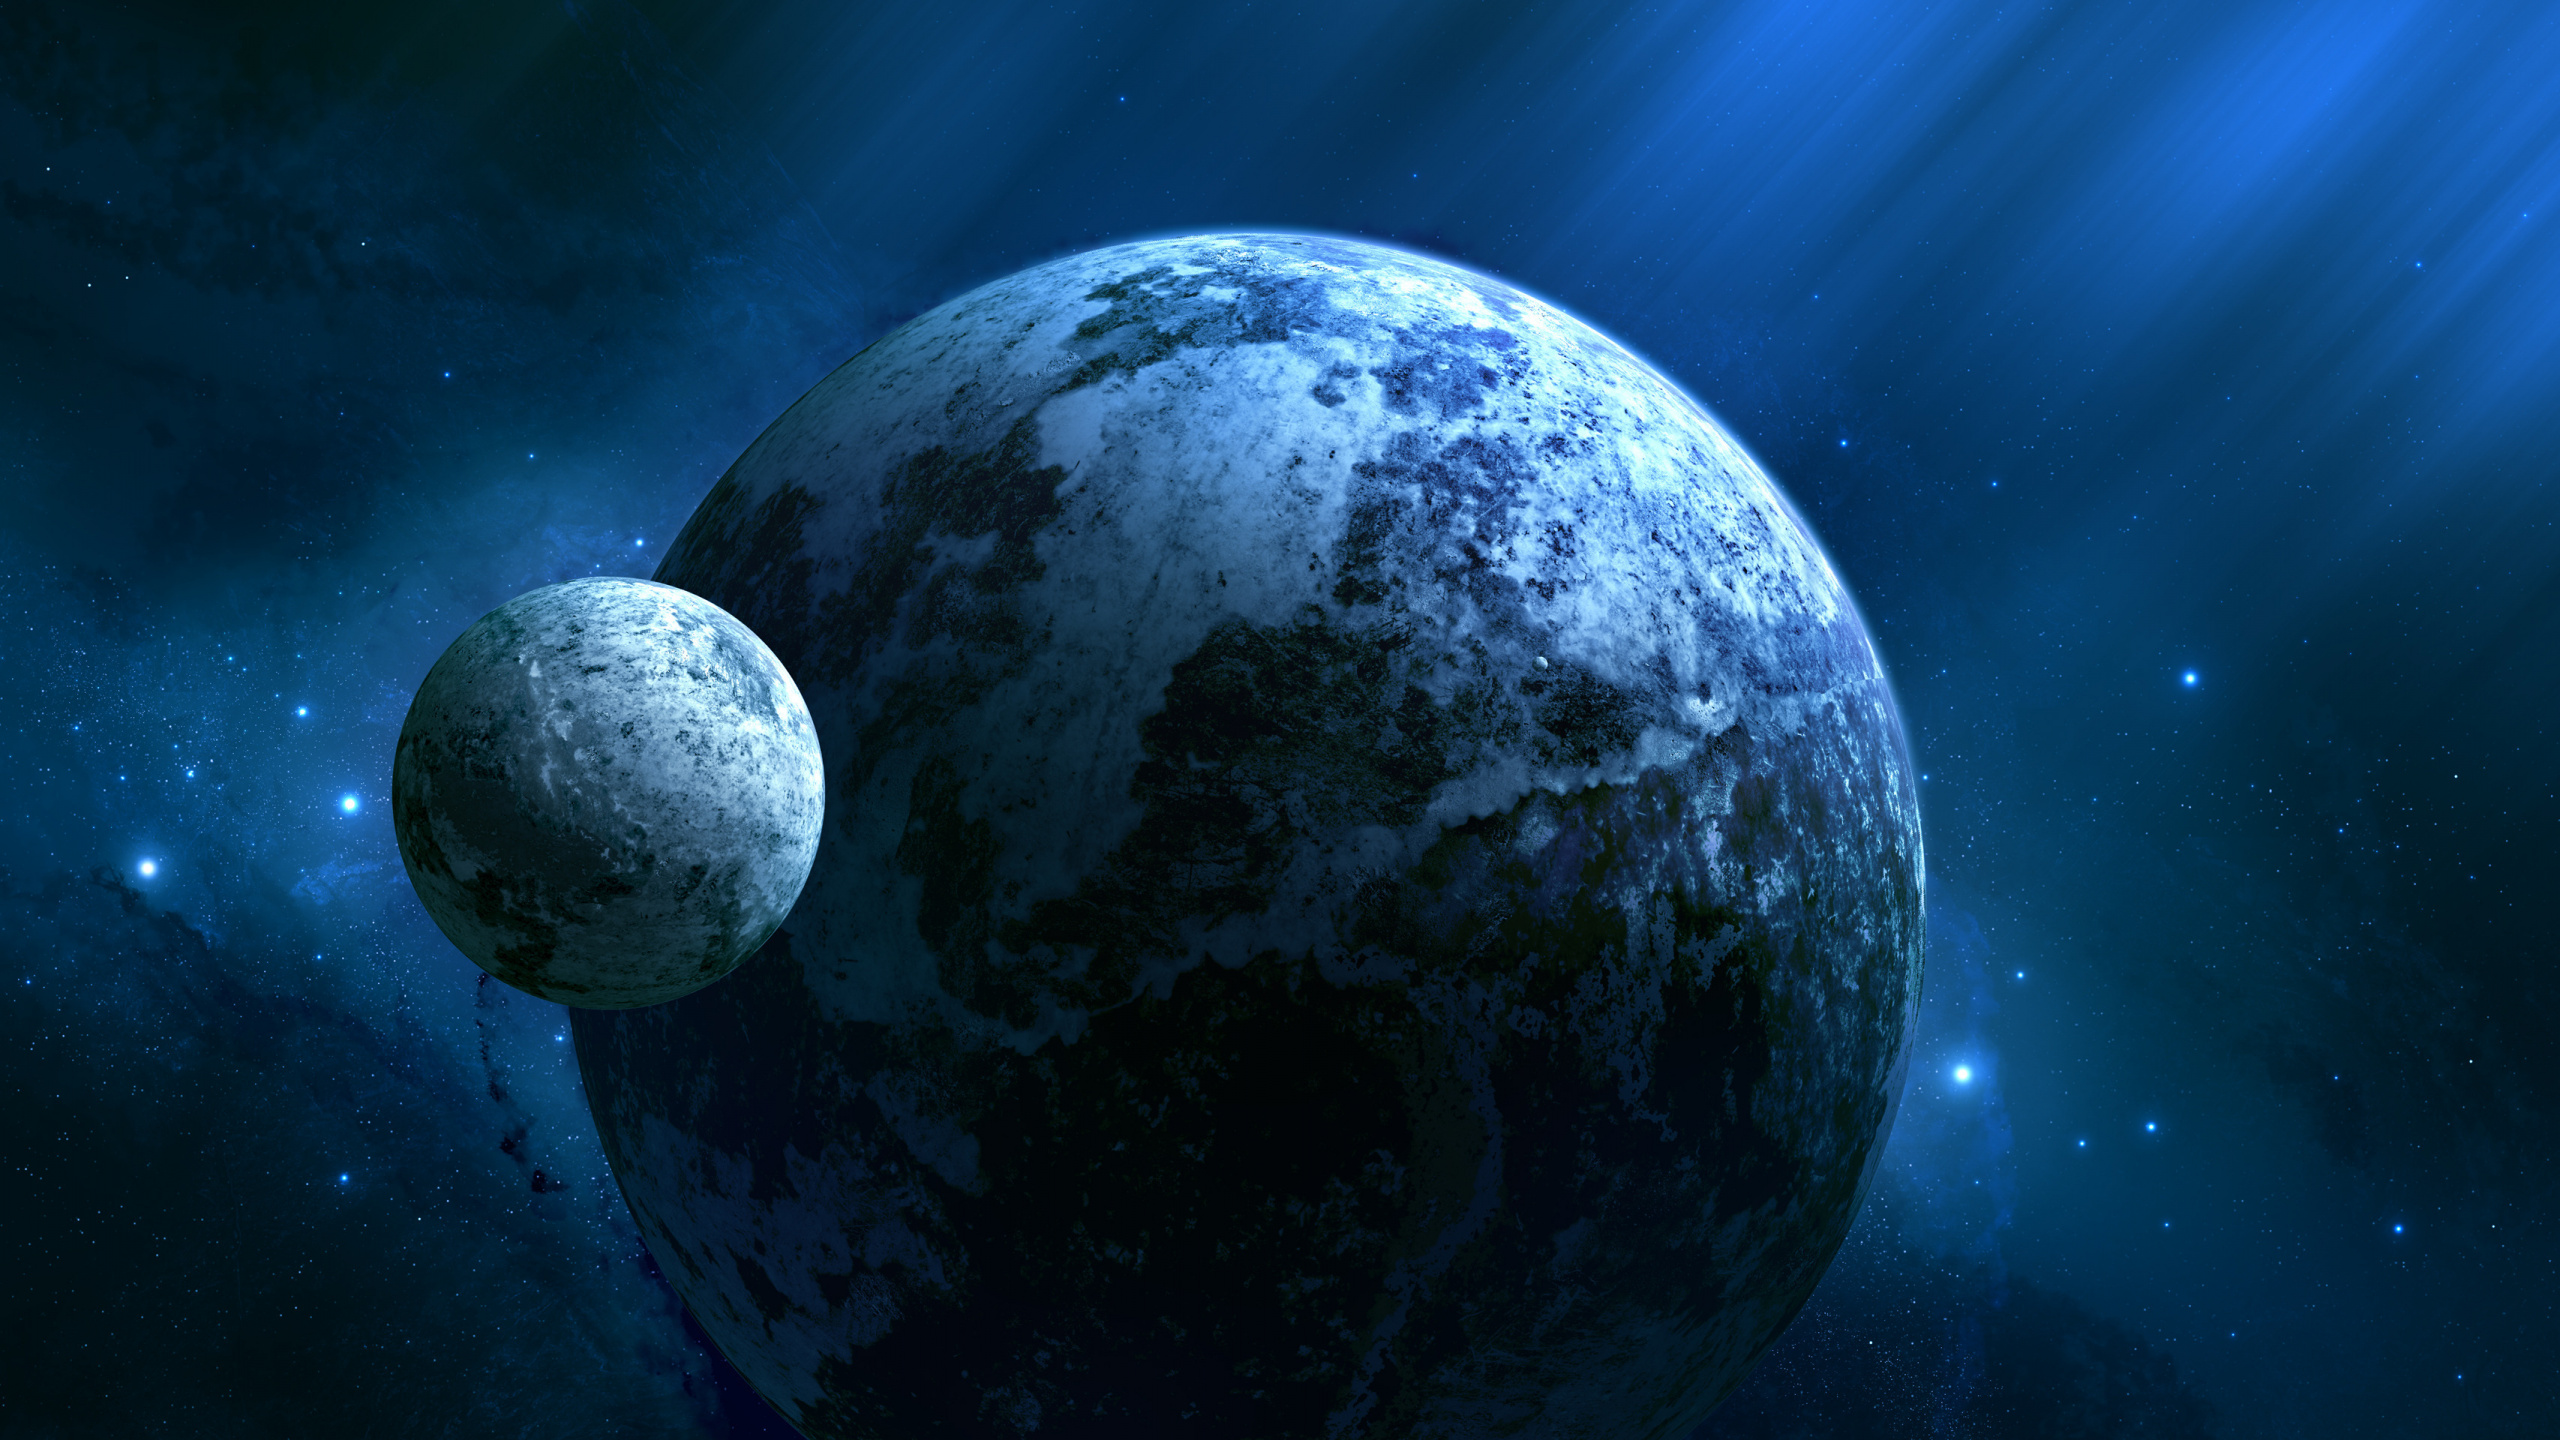 Schwarz-weißer Planet am Blauen Himmel. Wallpaper in 2560x1440 Resolution